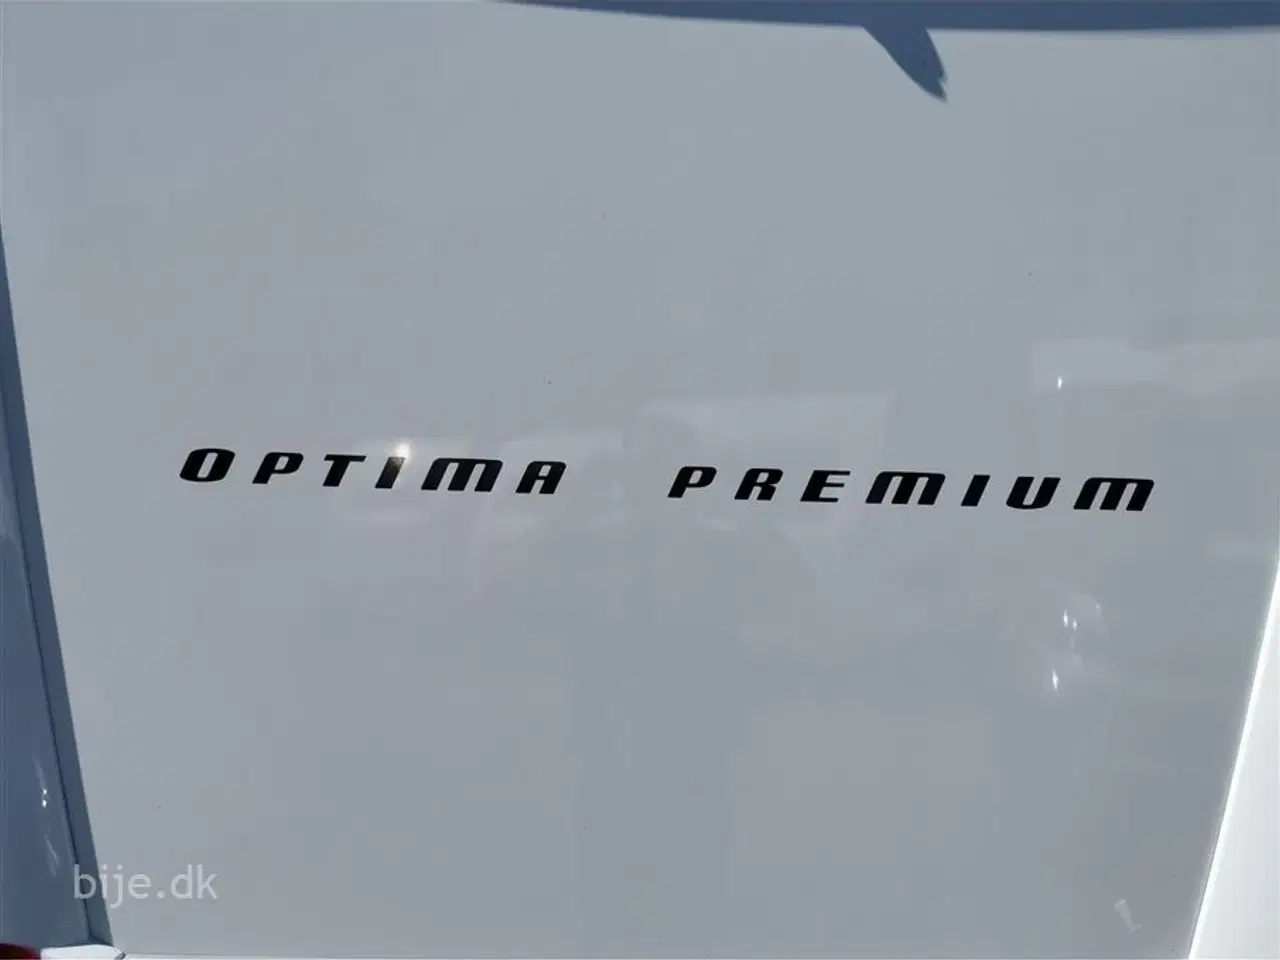 Billede 16 - 2019 - Hobby Optima Premium T65 GE   Hobby Optima Premium T65 GE er en populær autocampermodel fra den tyske producent Hobby. Denne model er kendt for sin høje kvalitet, komfort og praktiske layout.